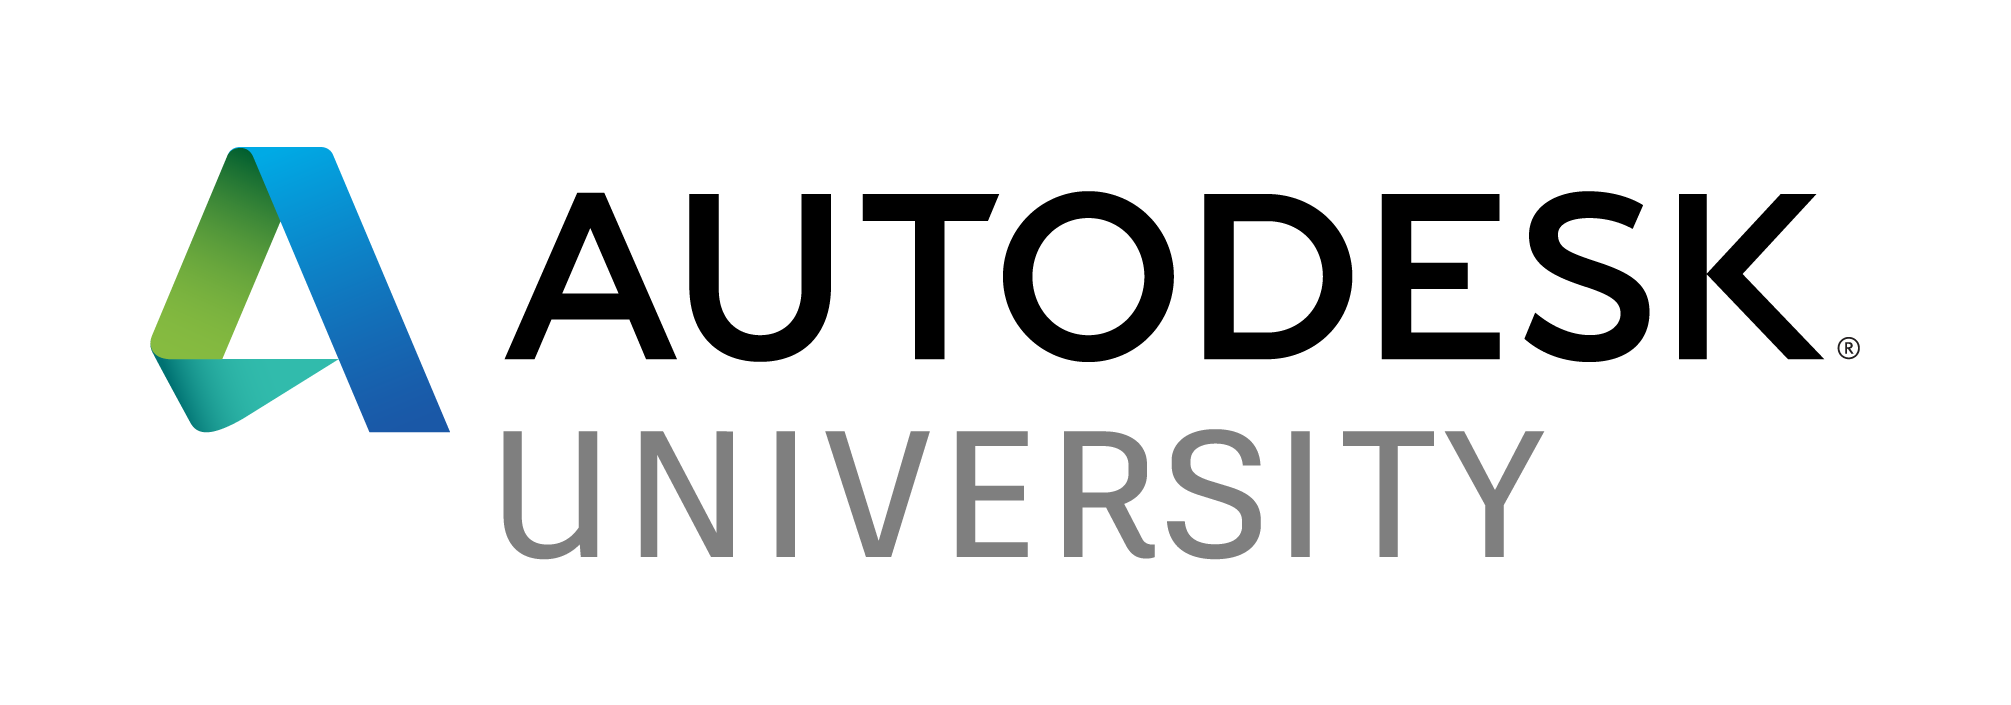 Autodesk lanza la conferencia digital de Autodesk University 2020